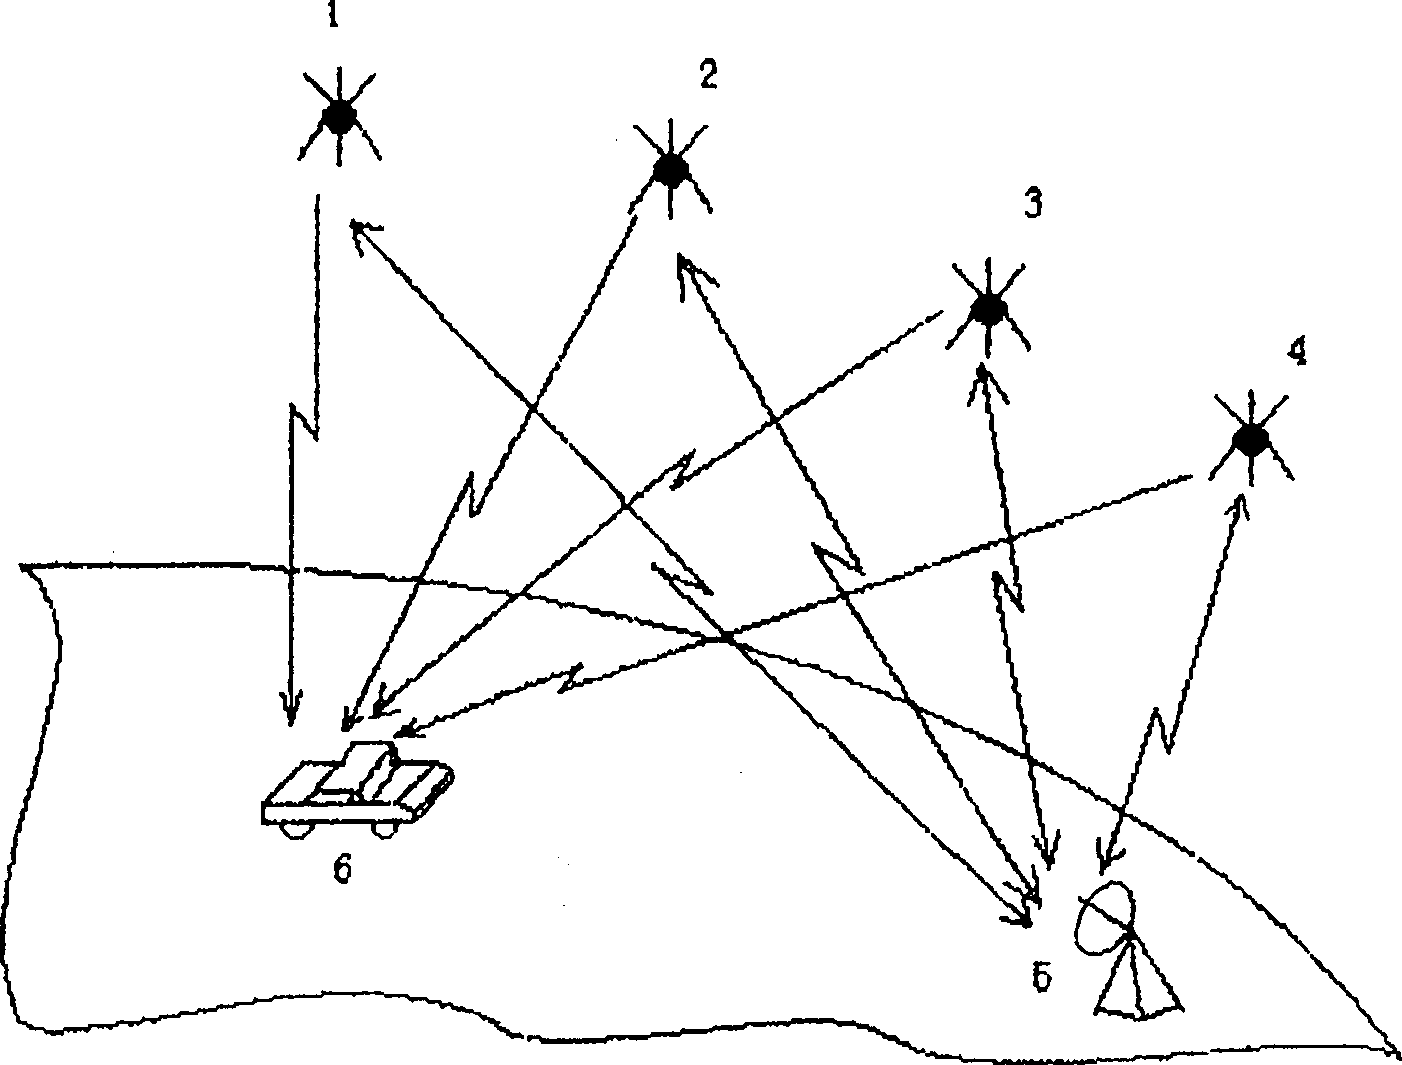 Satellite locating method